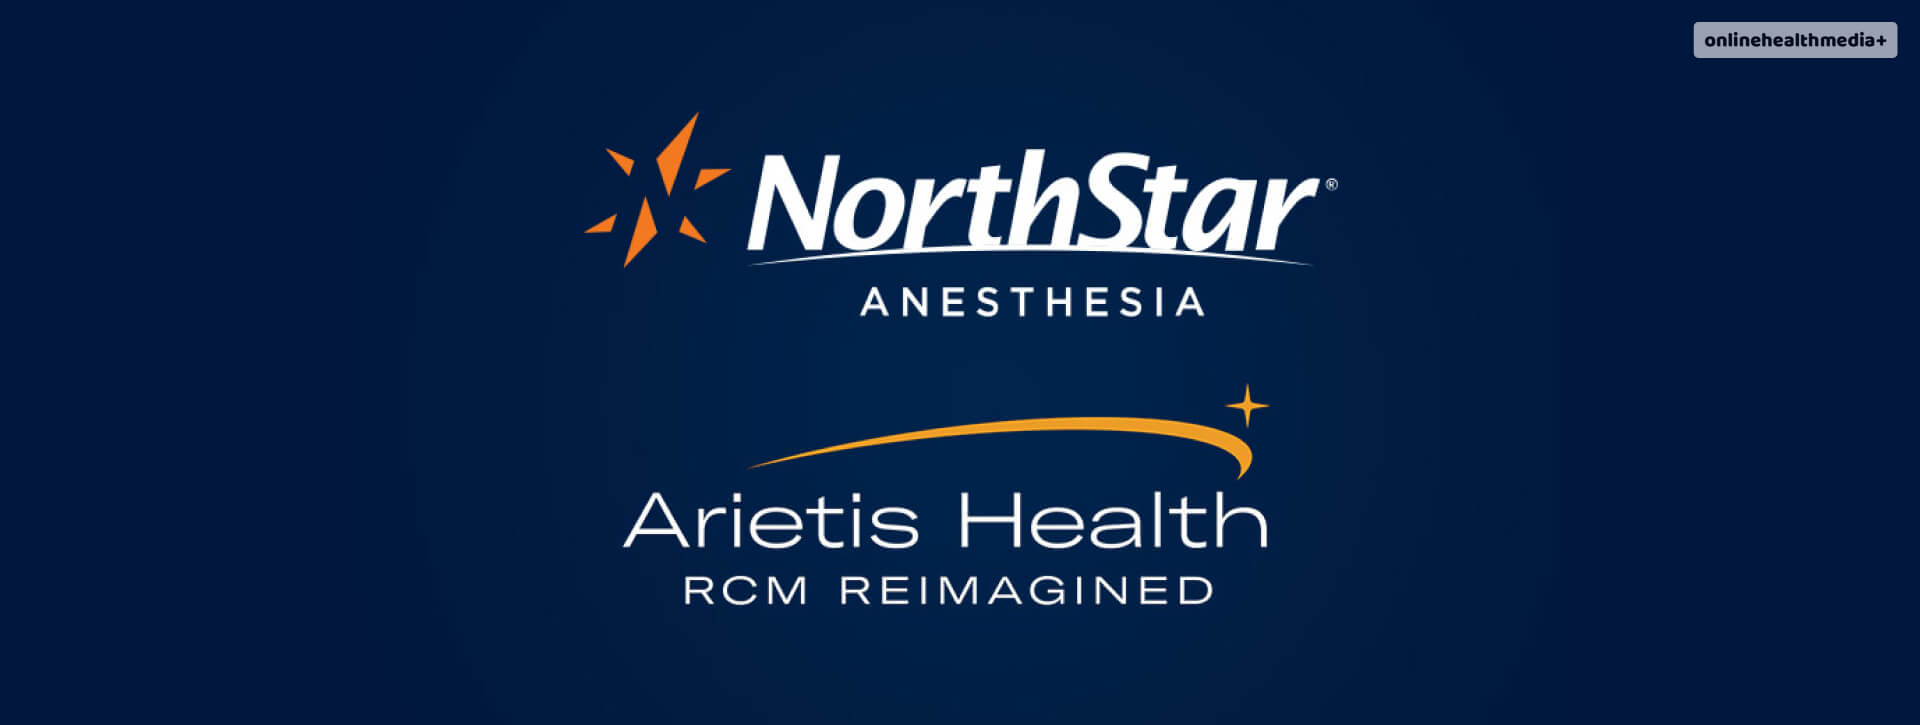 Arietis Health Data Breach